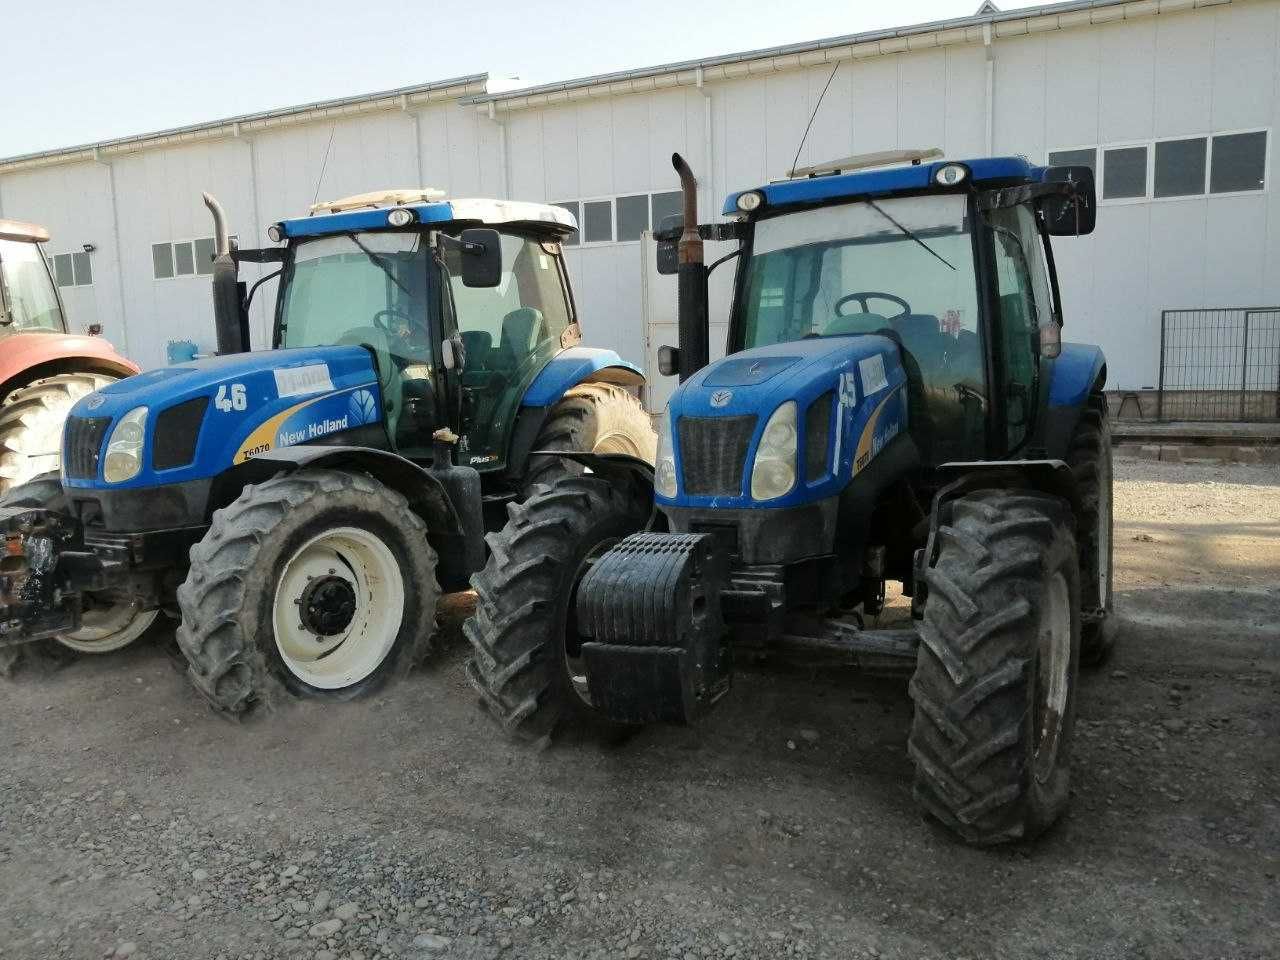 Продаются тракторы Нью холанд 6070 (2 ед.).